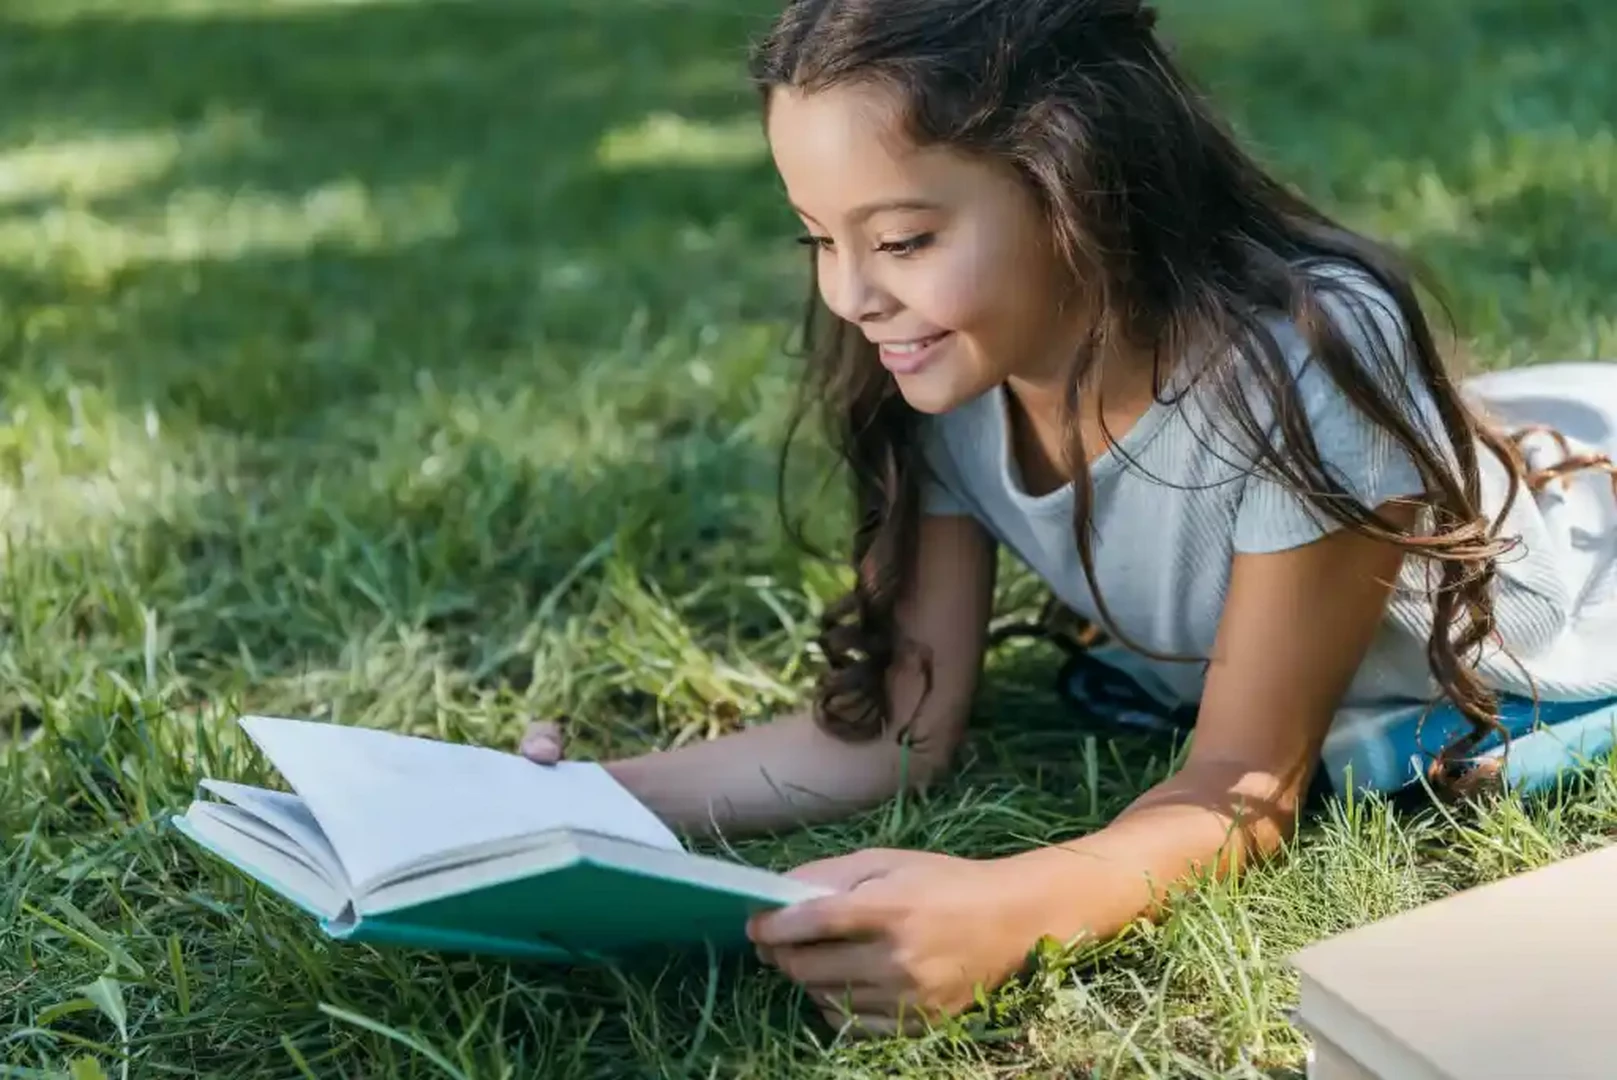 نکات مهم در مورد انتخاب کتاب داستان برای کودک 7 ساله